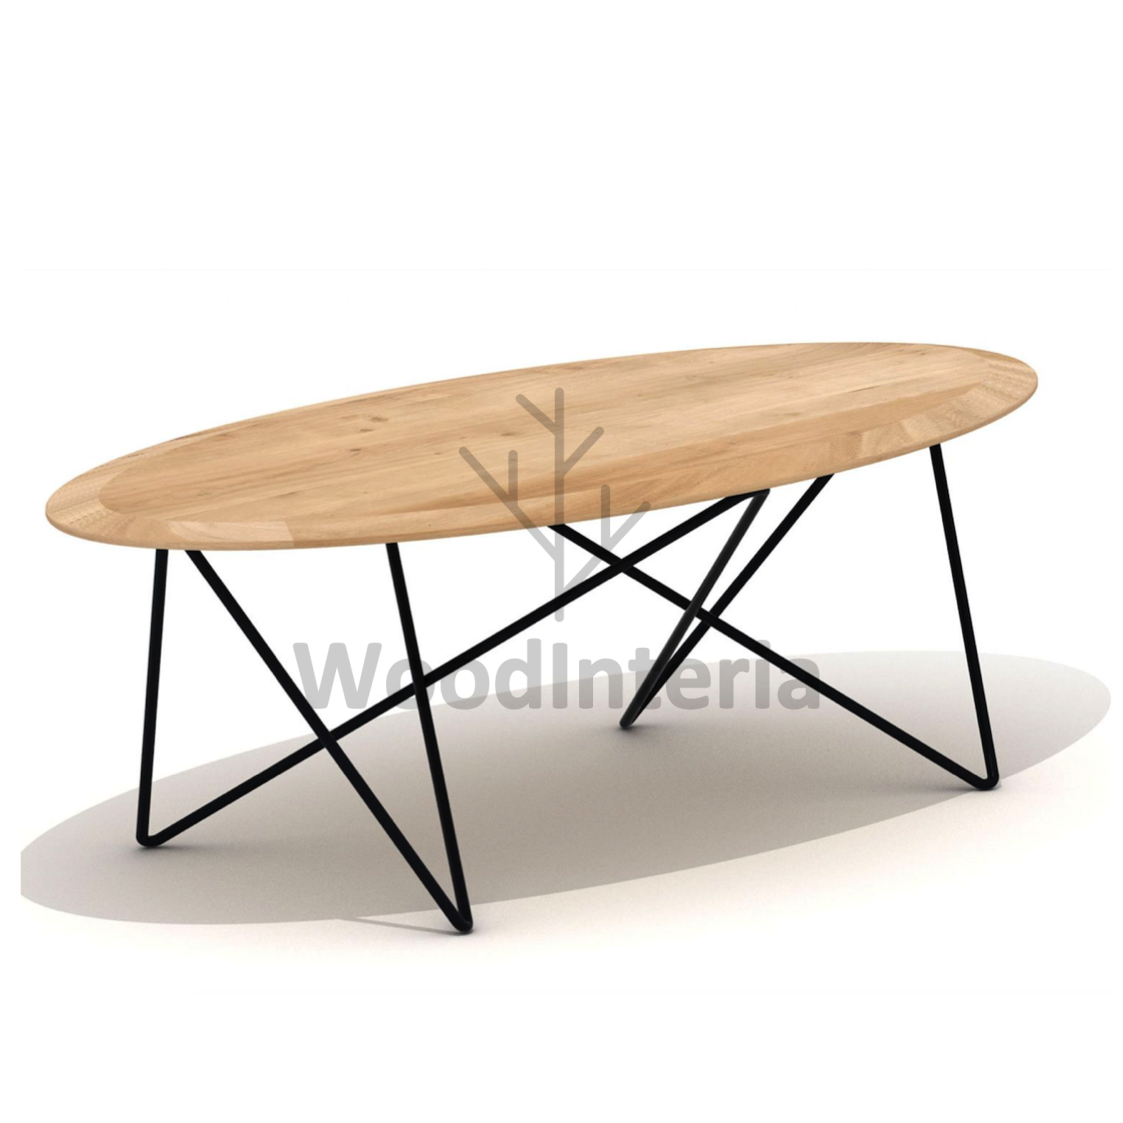 фото журнальный столик oak rod oval в интерьере лофт эко | WoodInteria